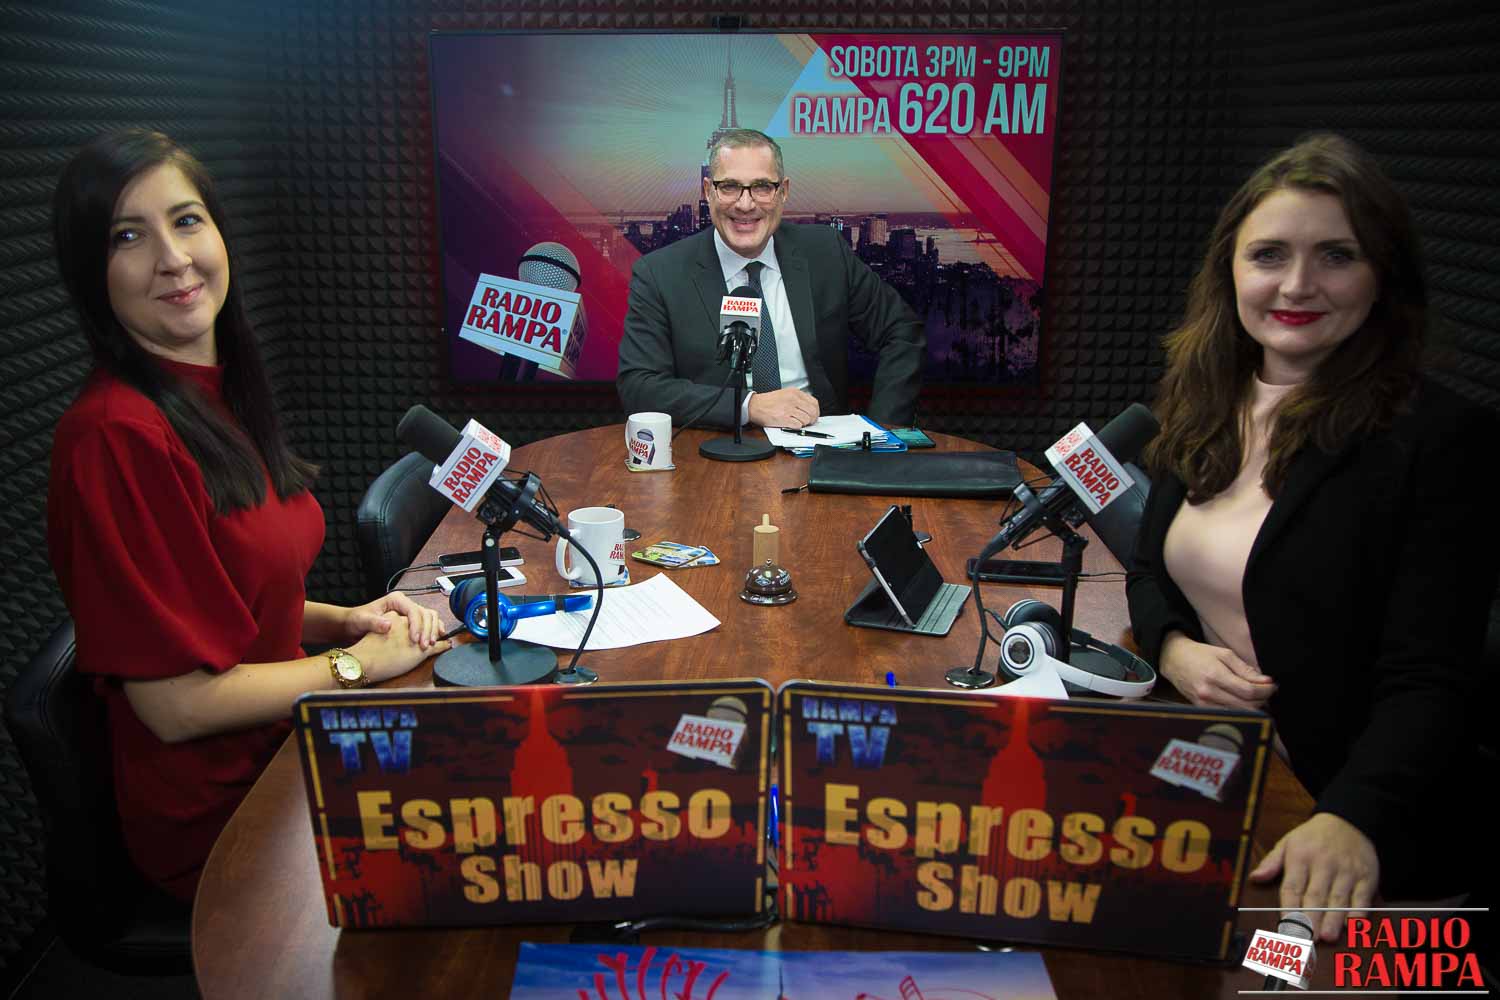 Espresso Show 2-1-18 Michael Wildes - prawnik Melanii Trump; kradzież paczek w NYC - jakie jest prawo? Sławomir Budzik o Chicago Auto Show